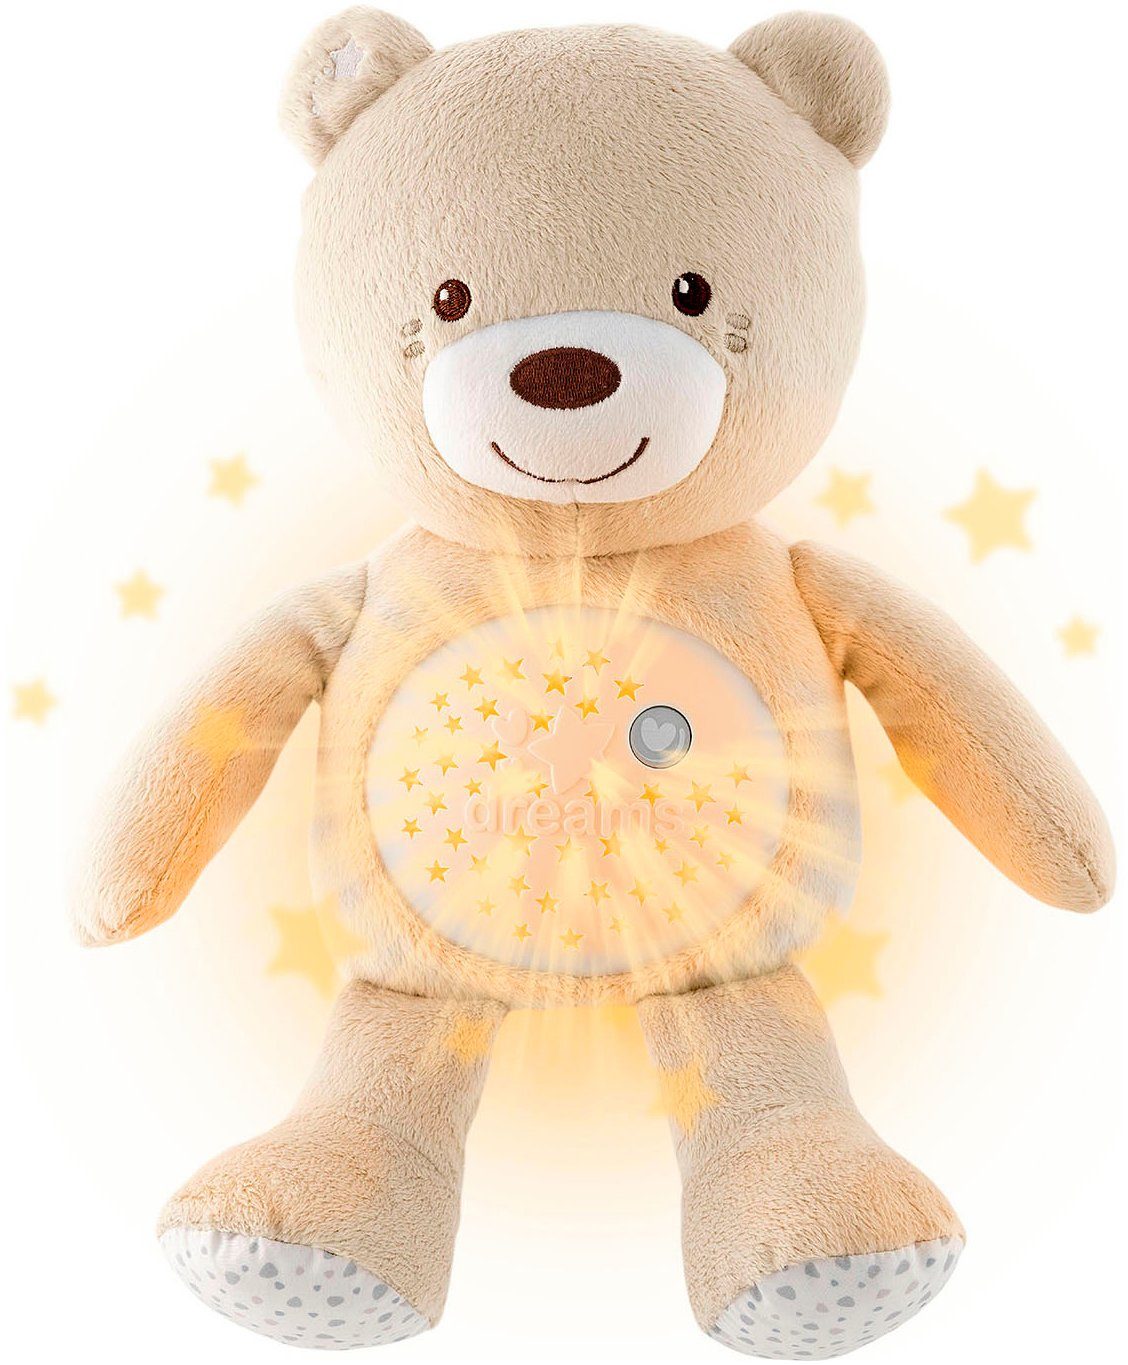 Chicco Kuscheltier First Dreams Baby Bear, Beige, mit Lichtprojektion und Soundfunktion